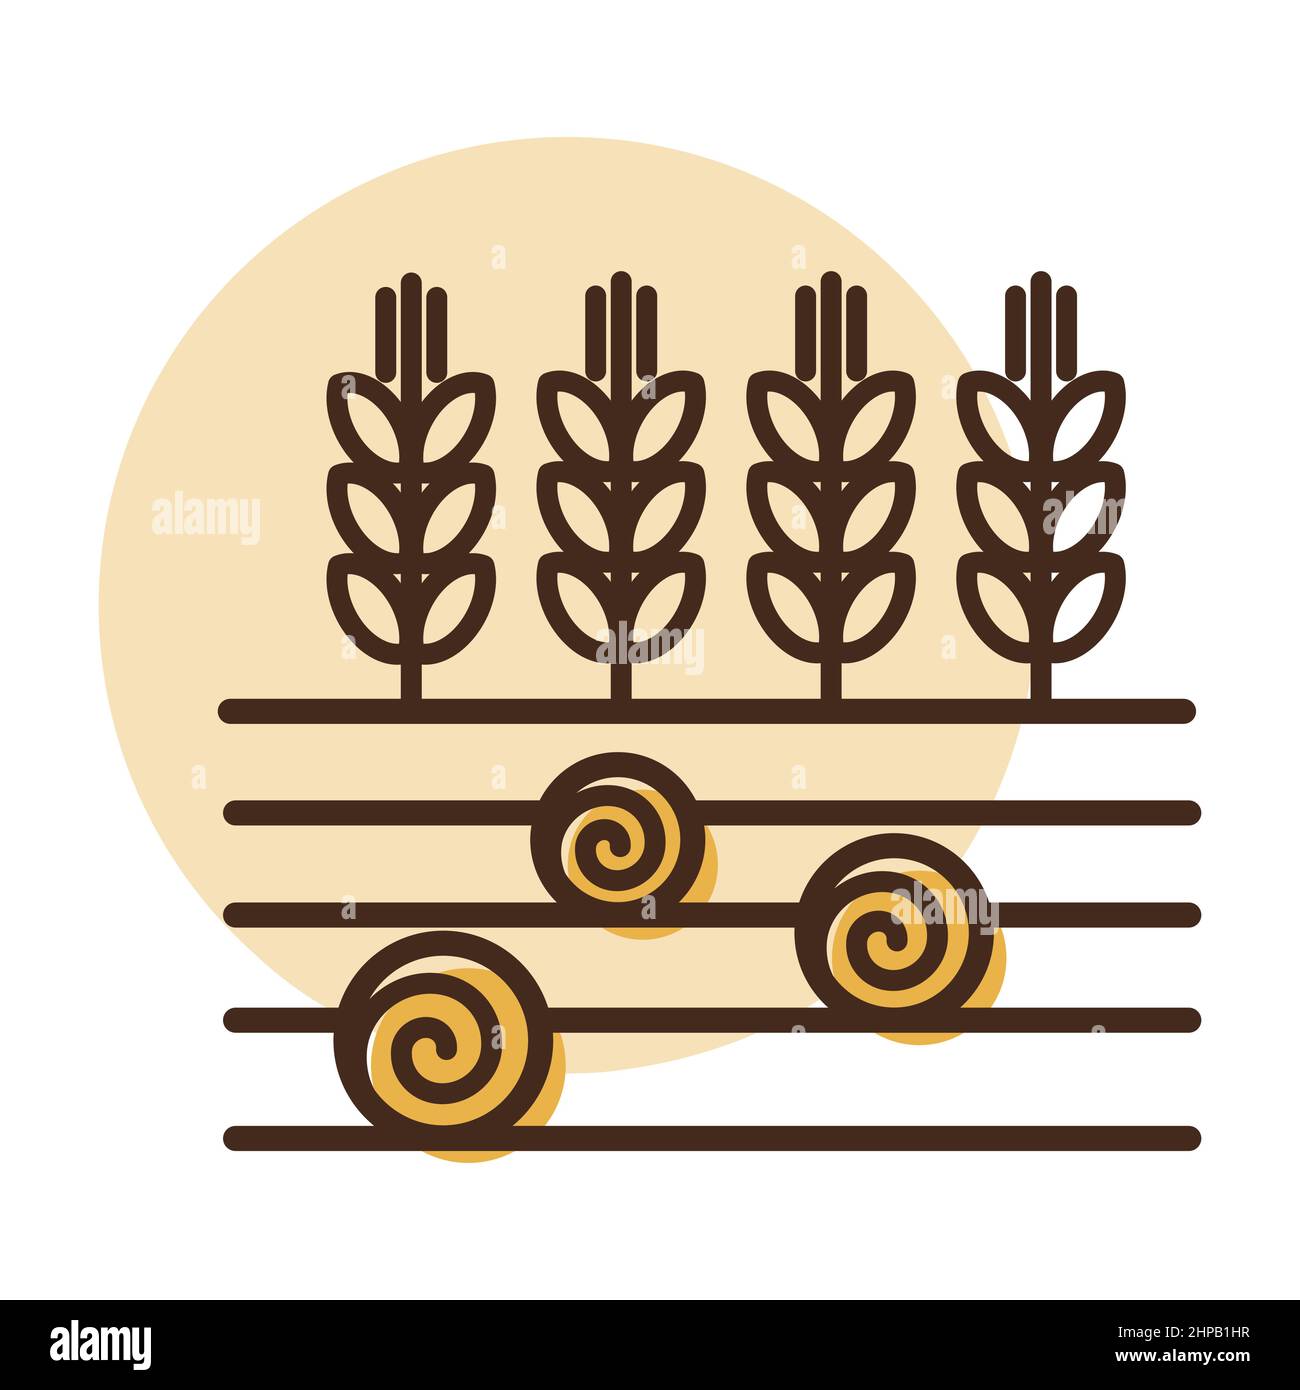 Symbol für Ähren von Weizen, Gerste oder Roggen auf dem Feld und runde Heuballen. Zeichen Landwirtschaft. Graph-Symbol für Ihr Website-Design, Logo, App, UI. Vektor illustrr Stock Vektor